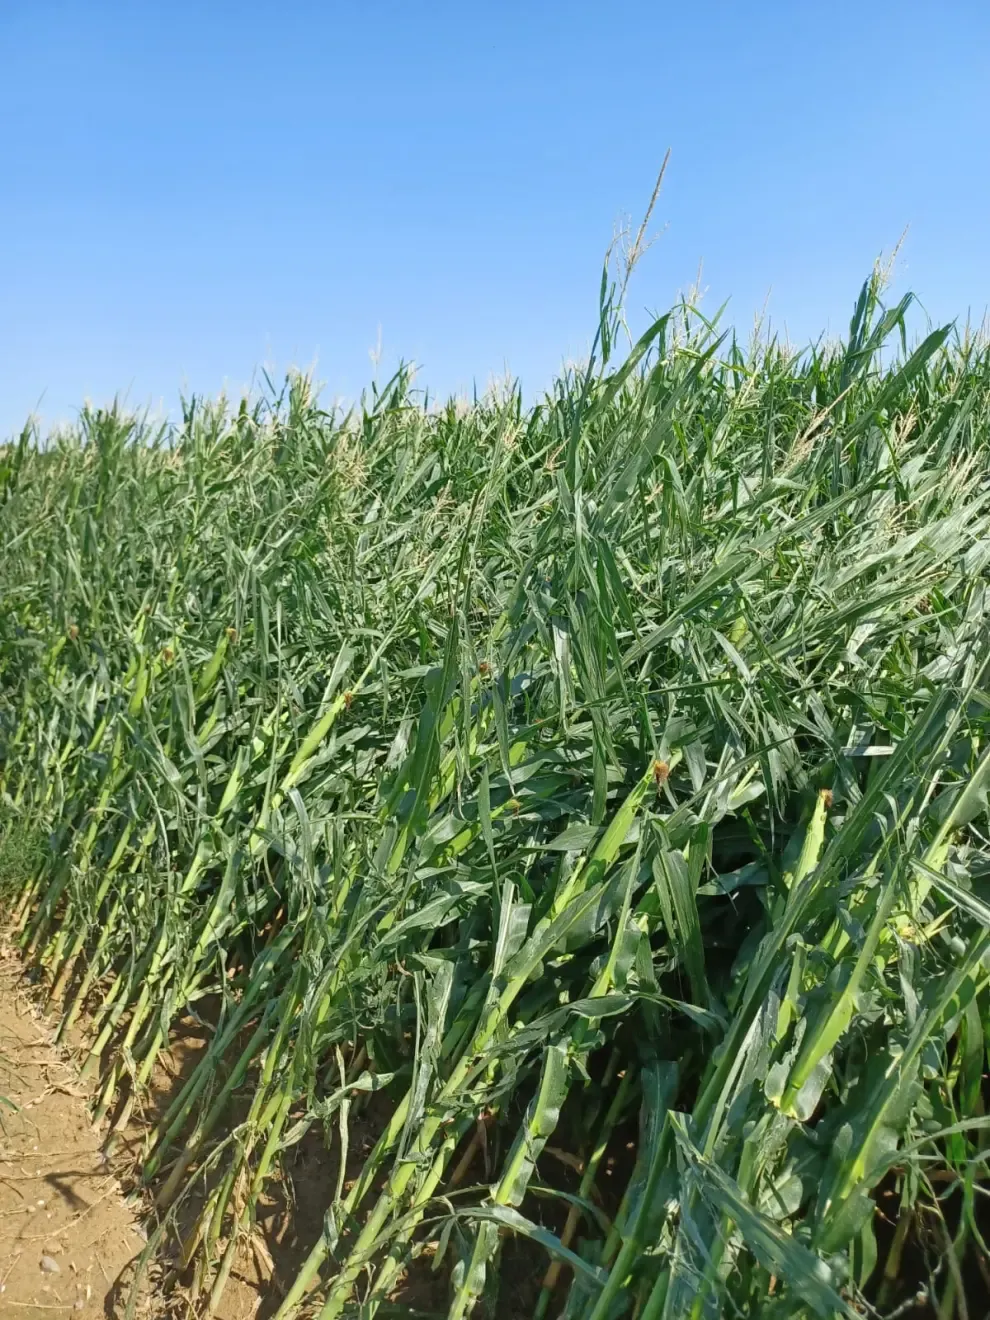 La tormenta ha dañado maíces tempranos, rastrojeros y alfalfa